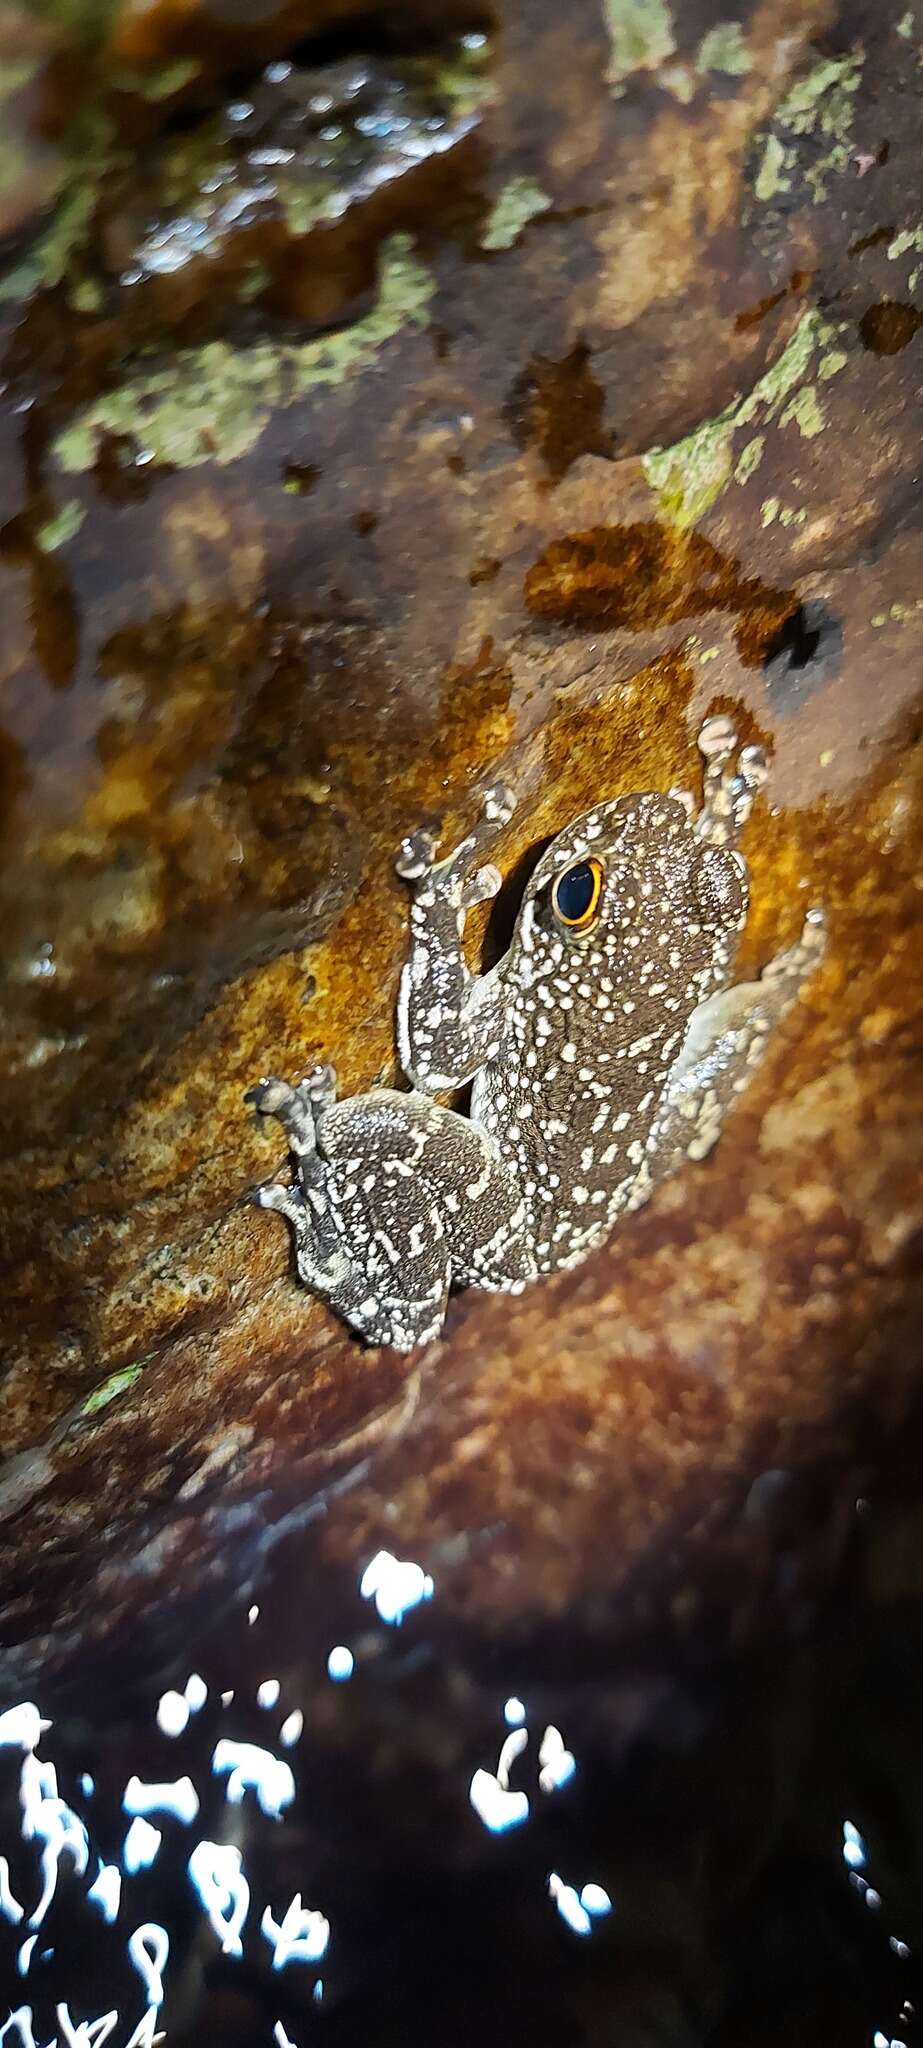 Image of Sabah Splash Frog